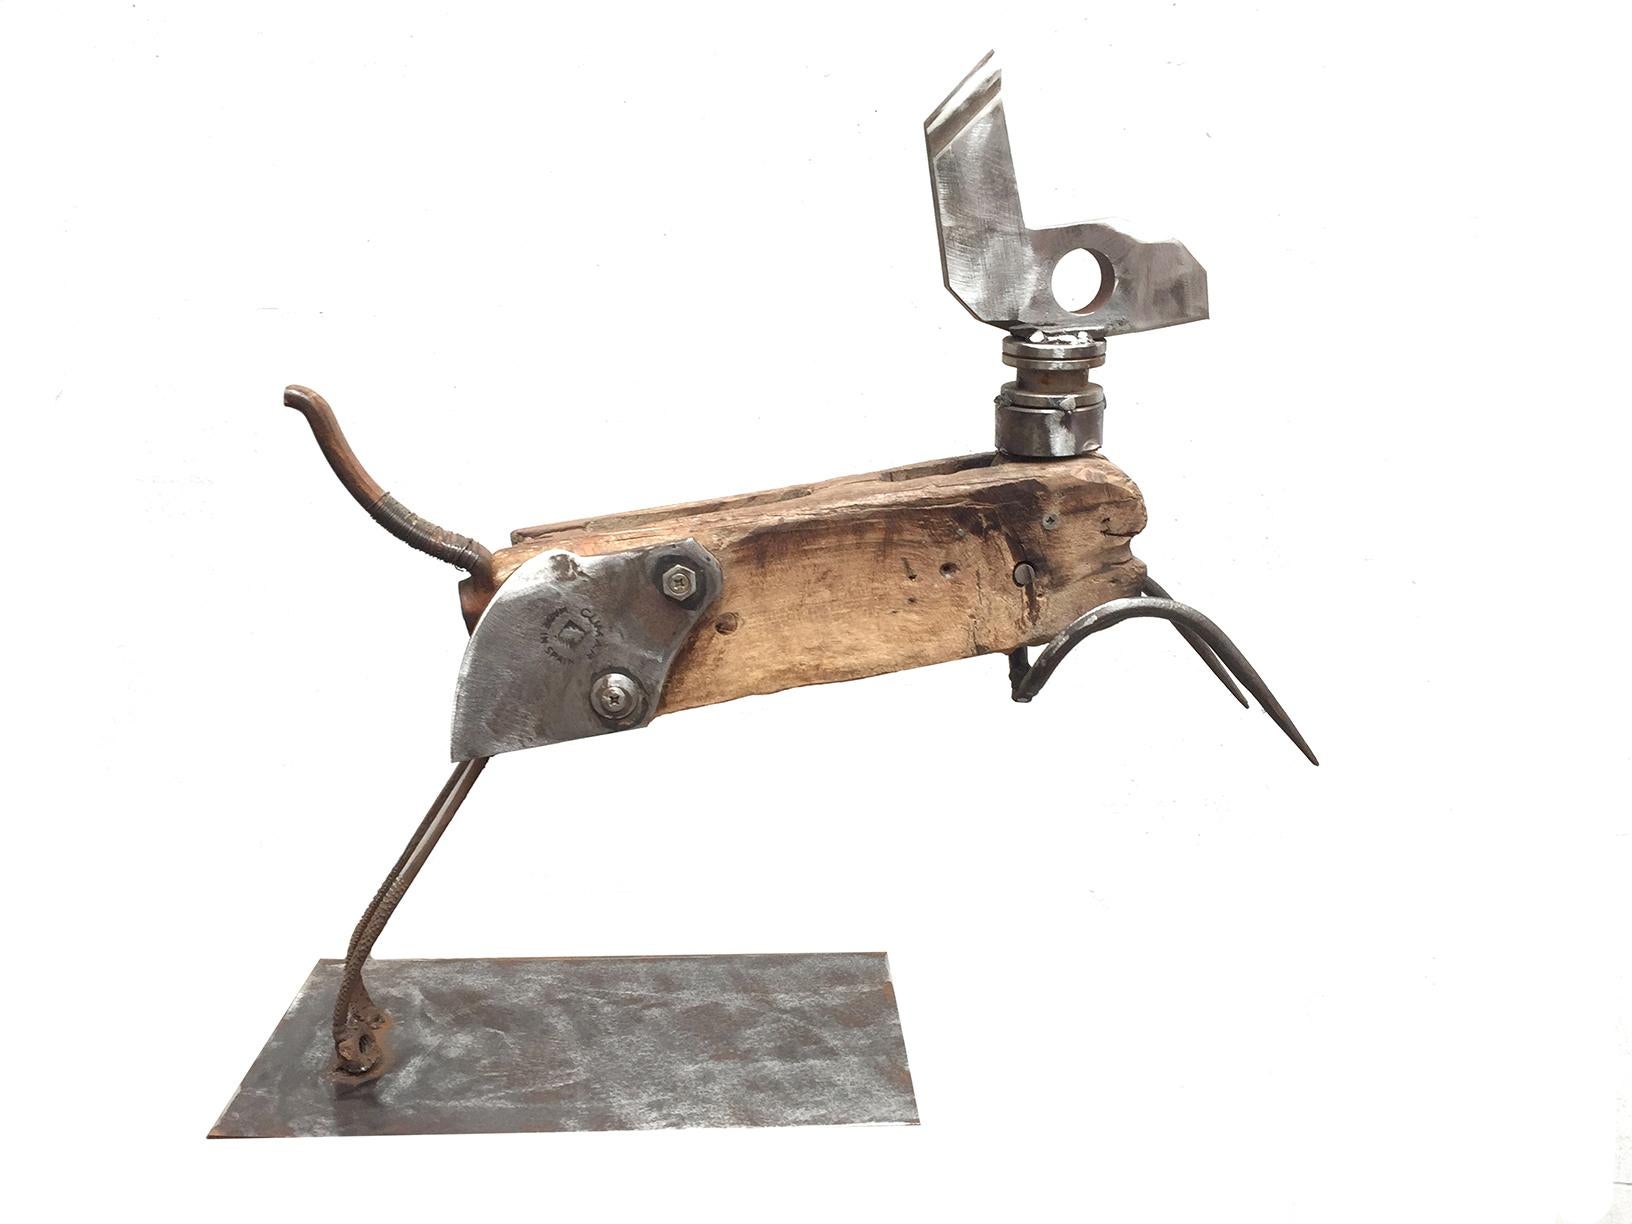 Figurative Sculpture Miquel Aparici - Liebre - 21e siècle, sculpture contemporaine, figurative, objets recyclés